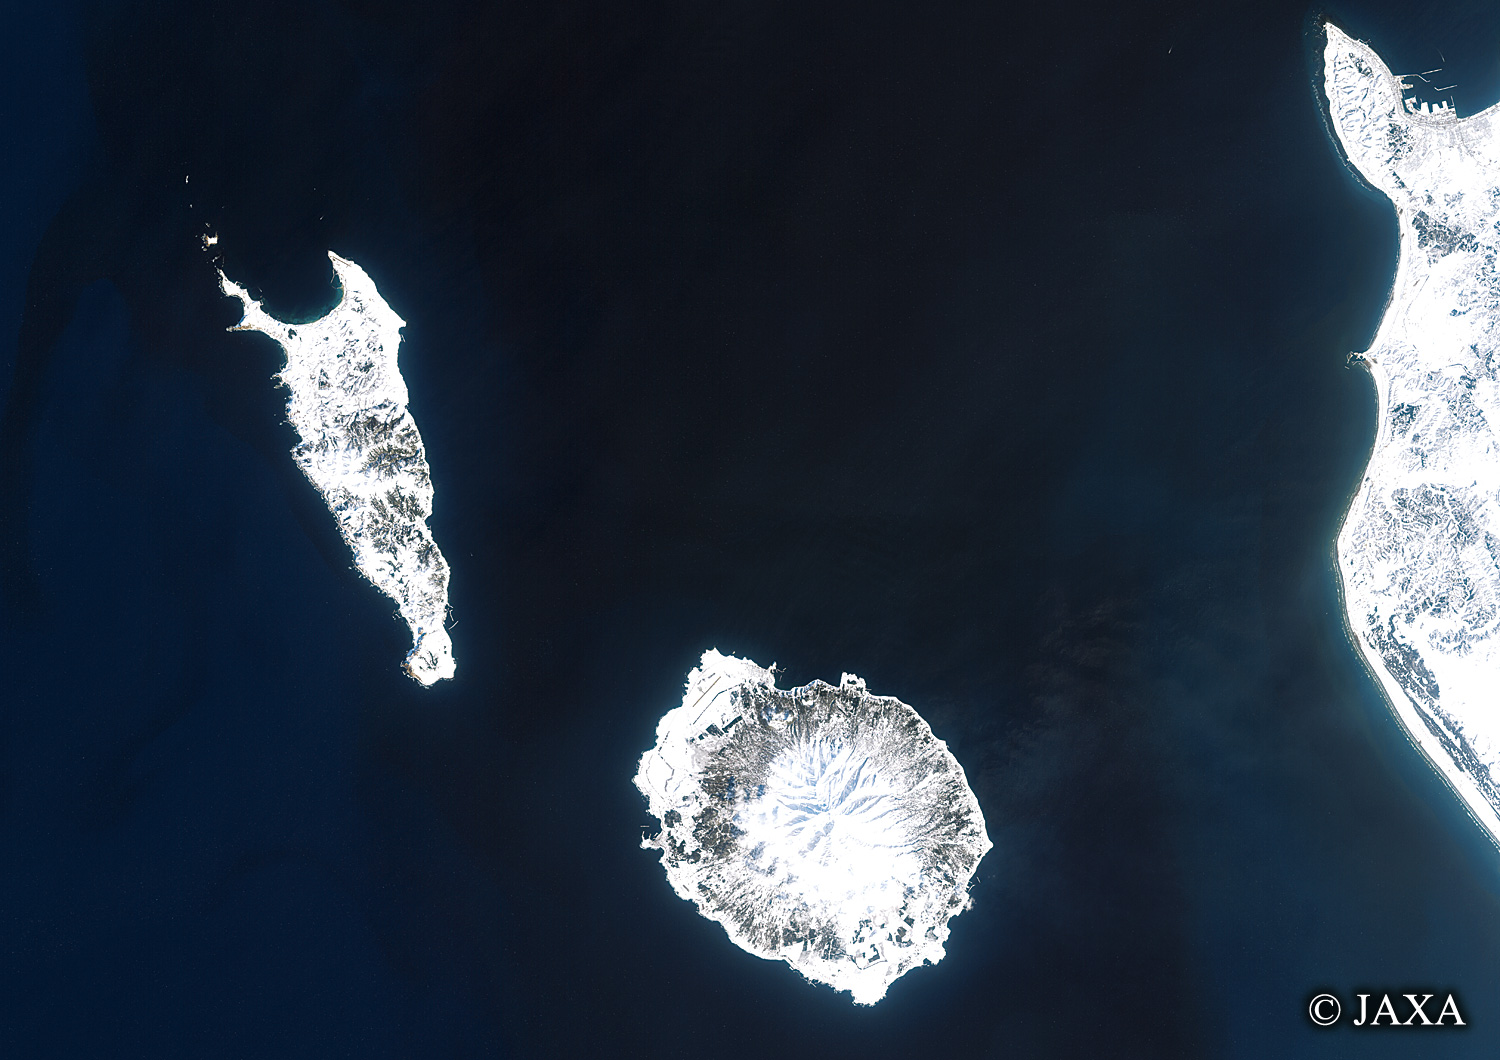 だいちから見た日本の都市 冬の礼文島・利尻島・稚内:衛星画像